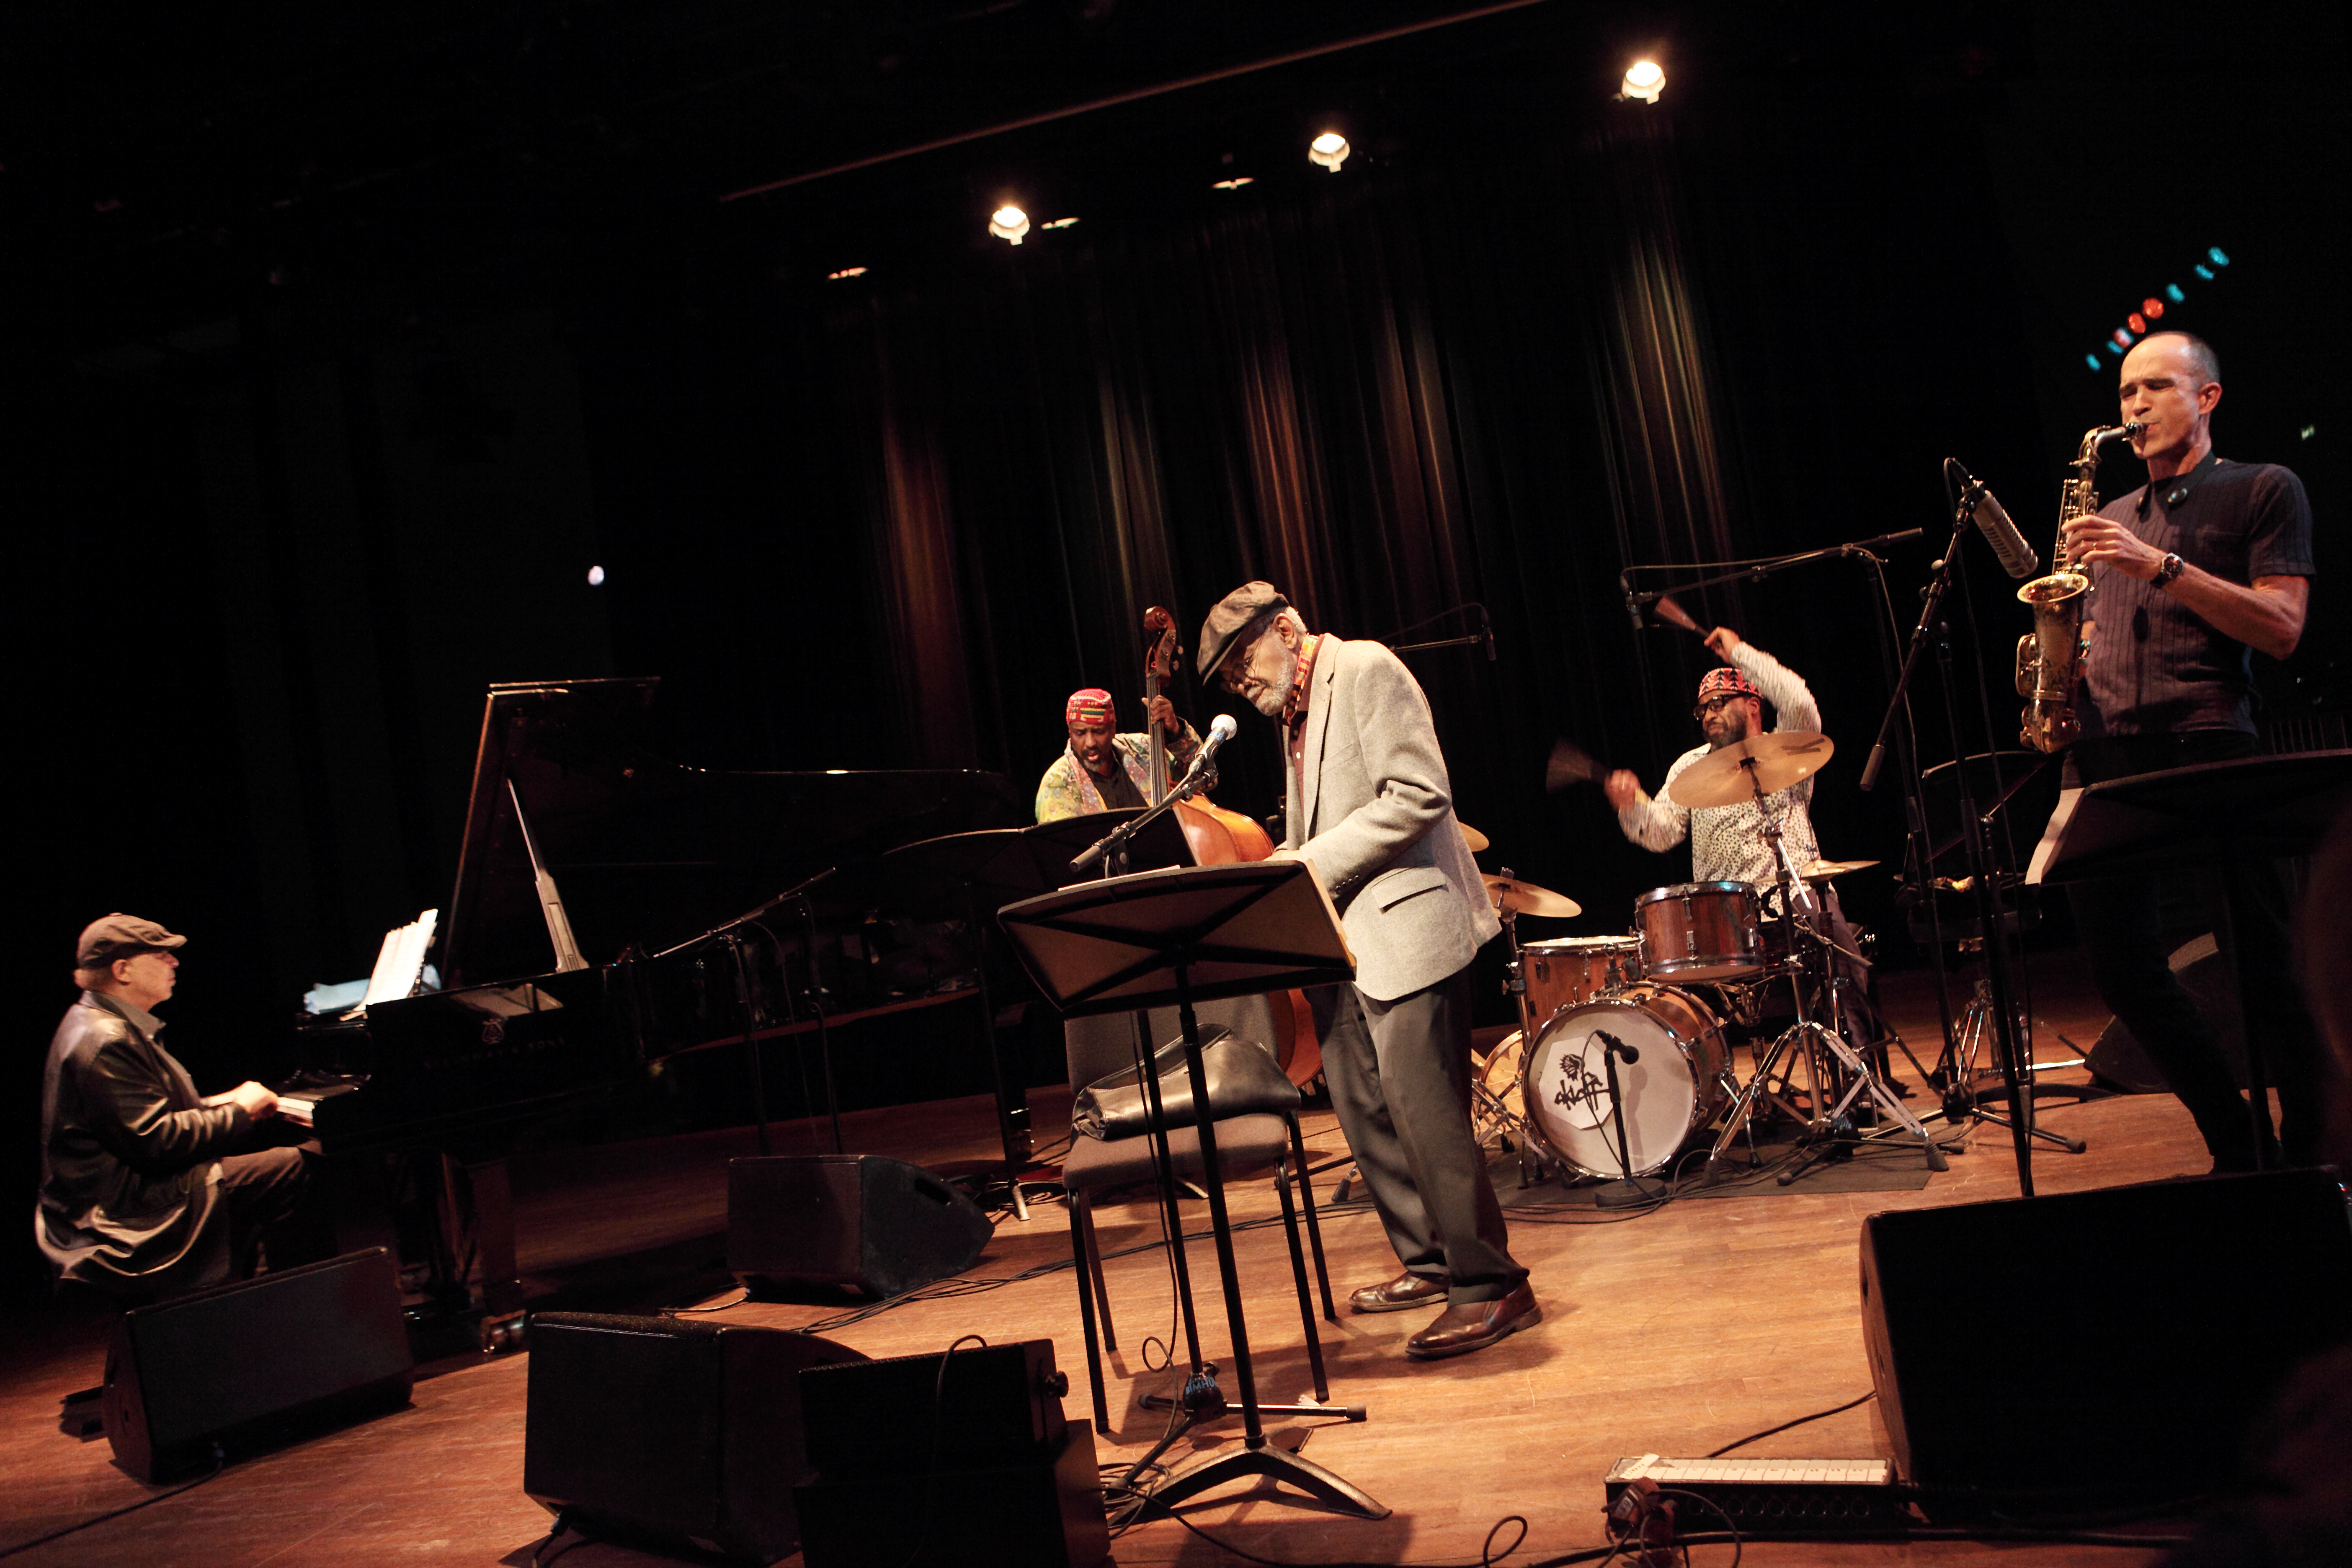 Poeta Amiri Baraka se apresentando com um grupo de músicos de jazz em um palco